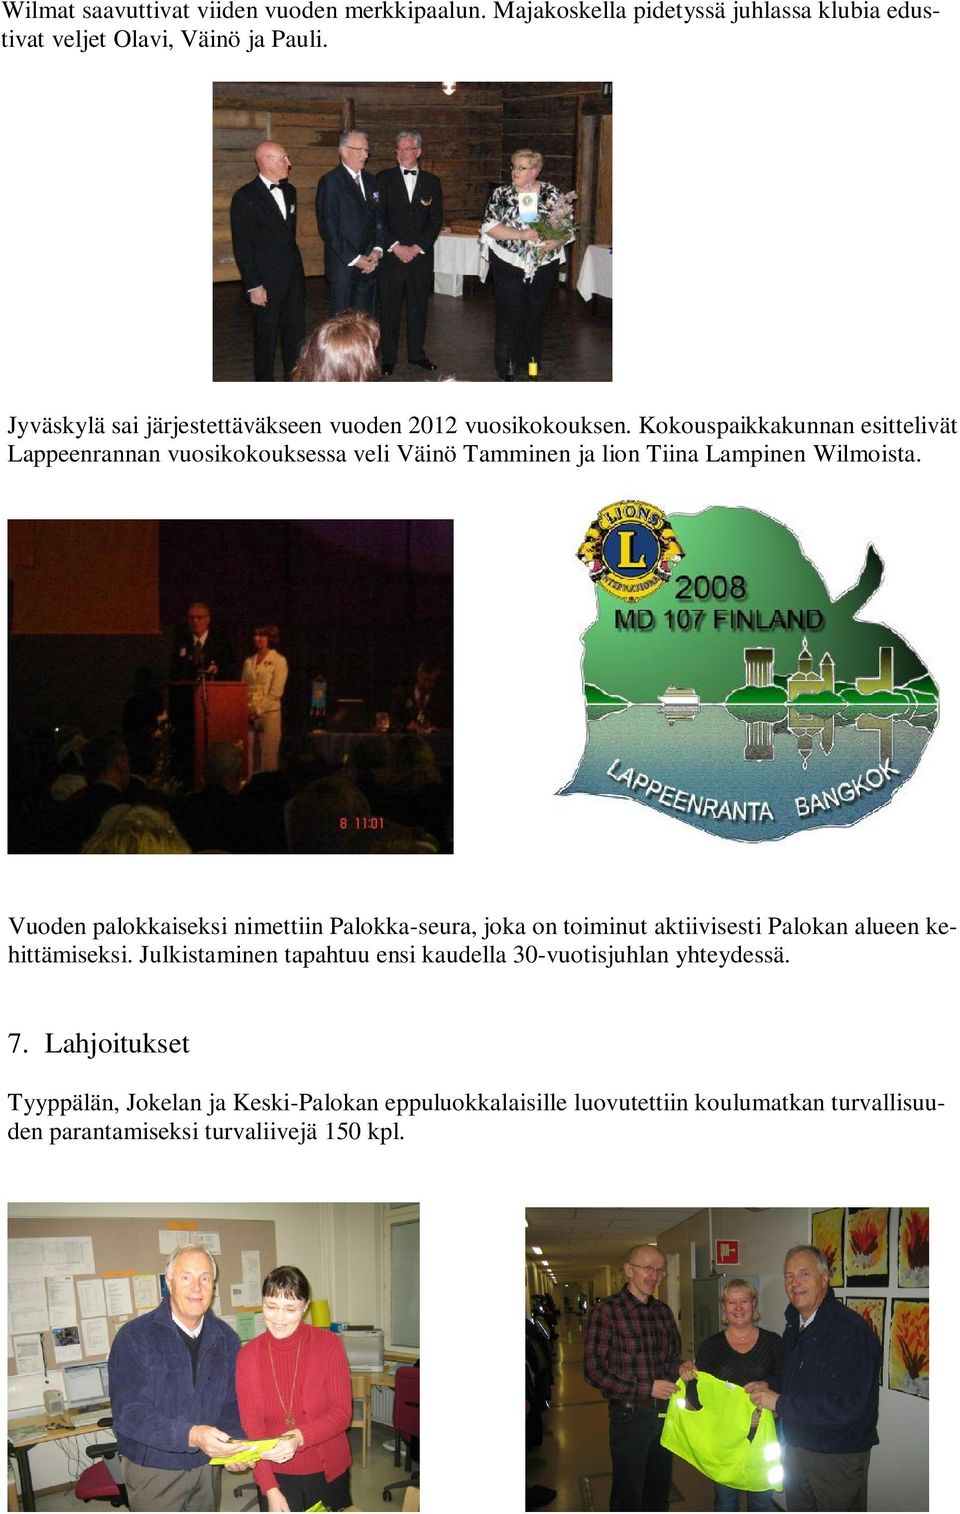 Kokouspaikkakunnan esittelivät Lappeenrannan vuosikokouksessa veli Väinö Tamminen ja lion Tiina Lampinen Wilmoista.